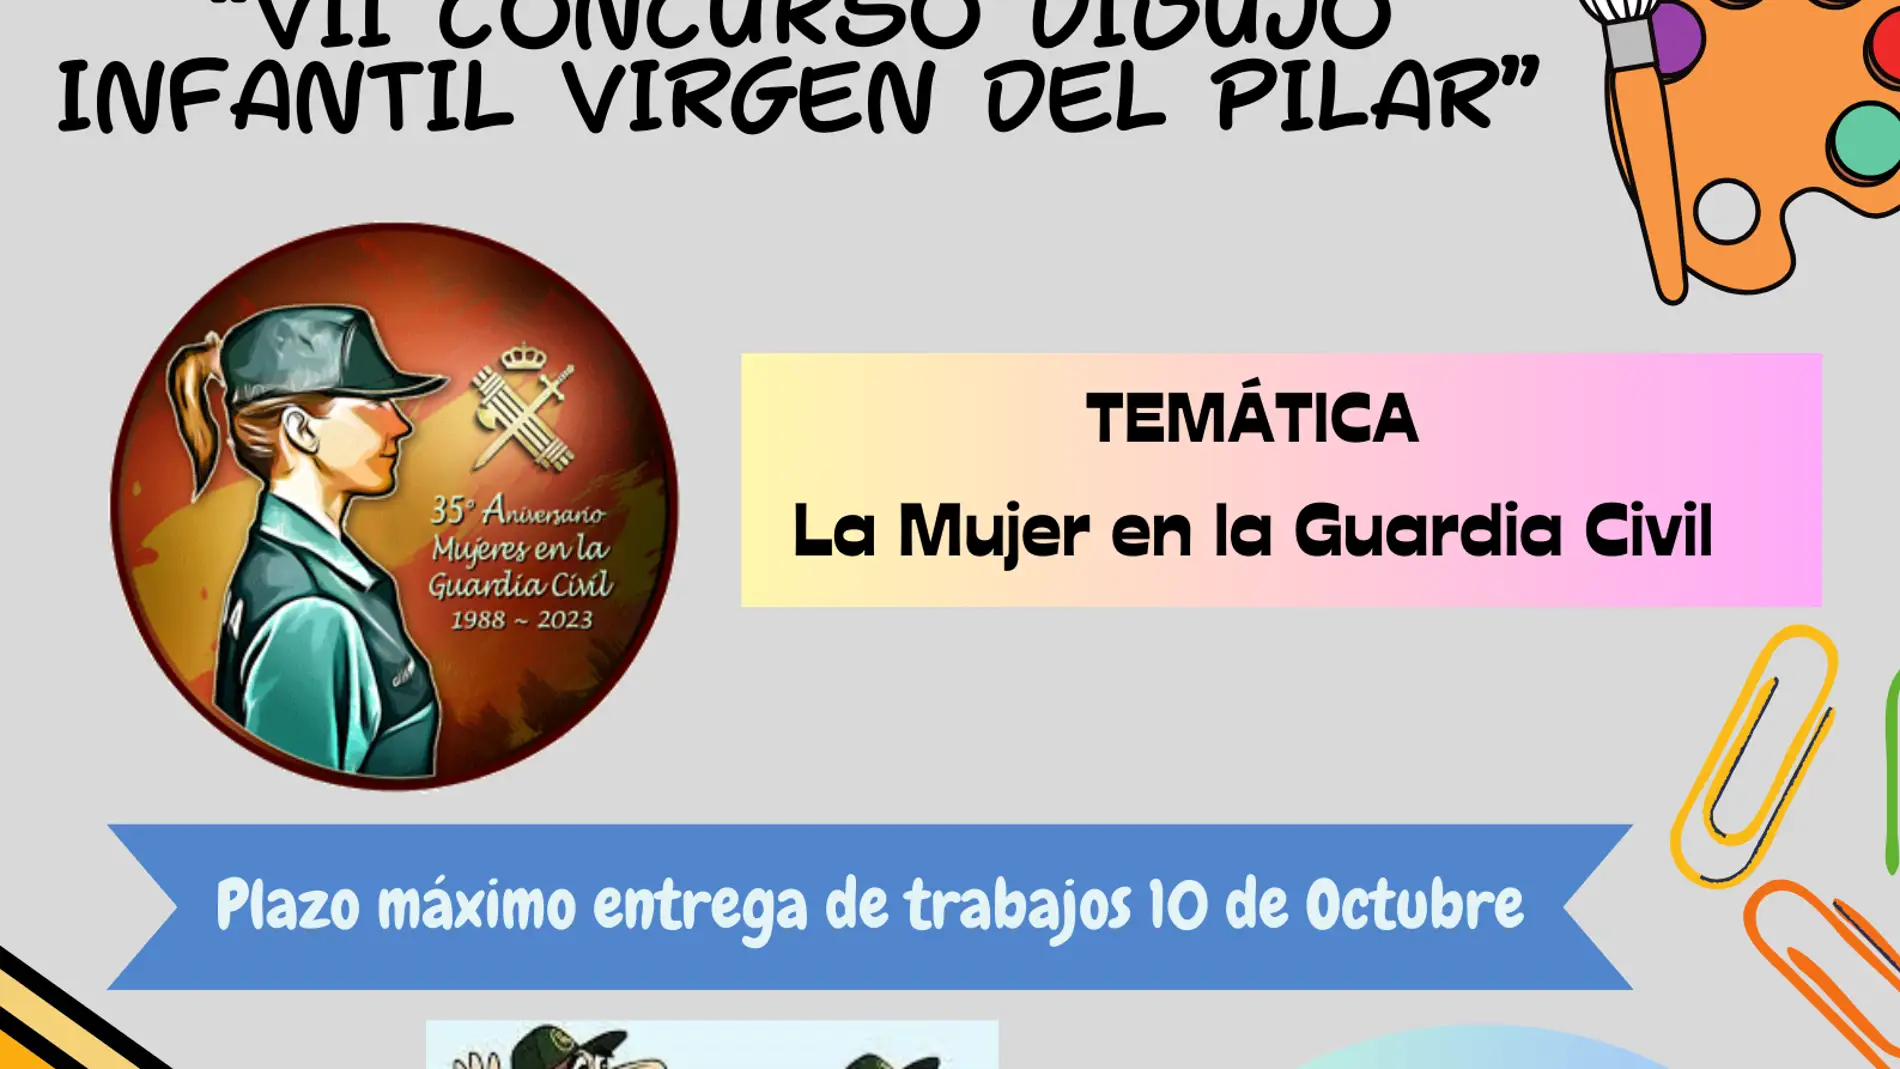 Concurso de dibujo infantil 'Virgen del Pilar'